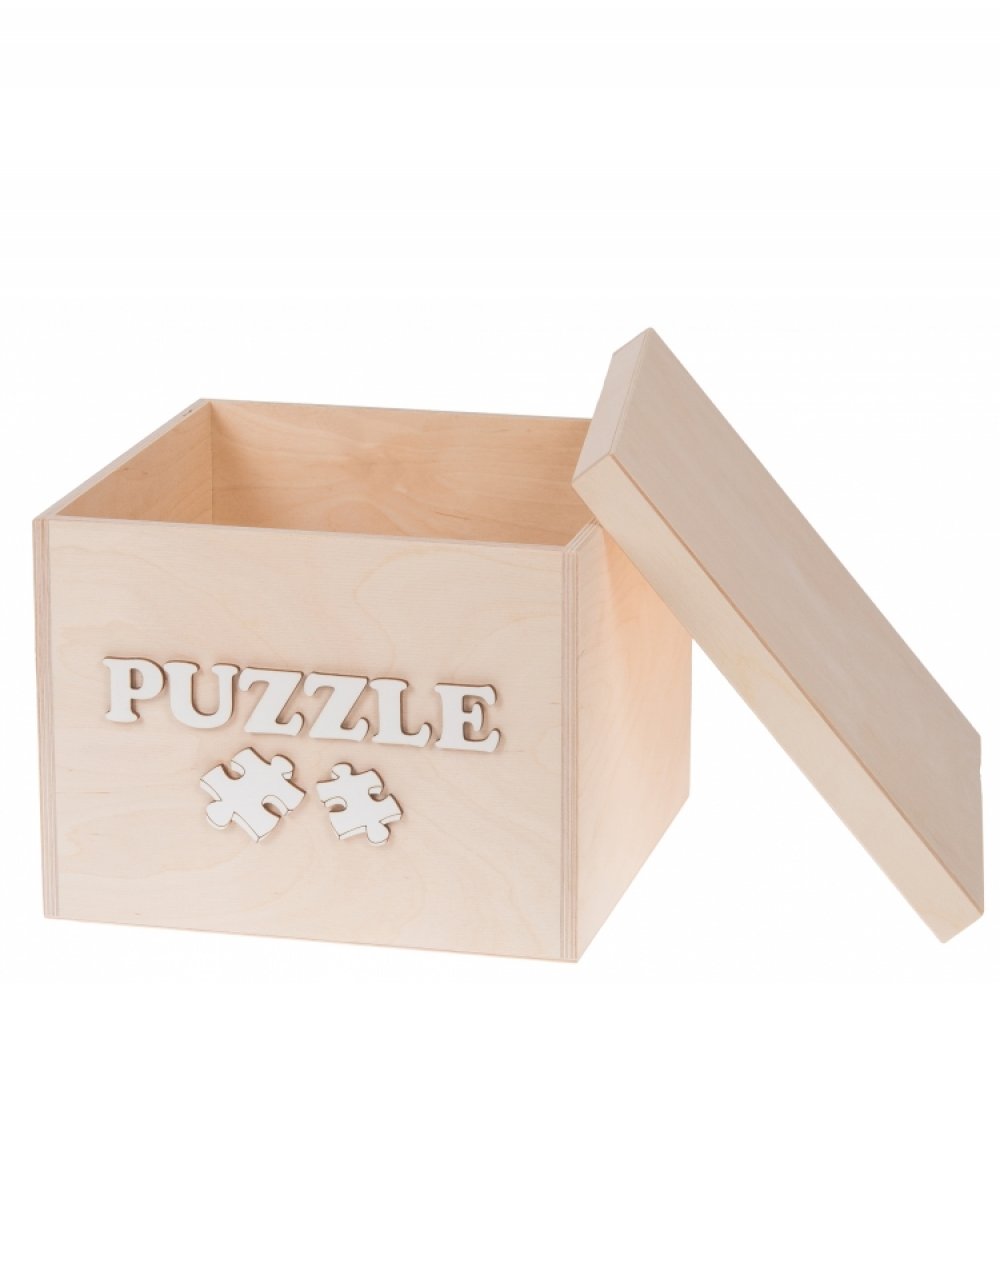 Dřevěný box na hračky PUZZLE bílé, 25x25x20 cmDřevěný box na hračky PUZZLE bílé, 25x25x20 cm